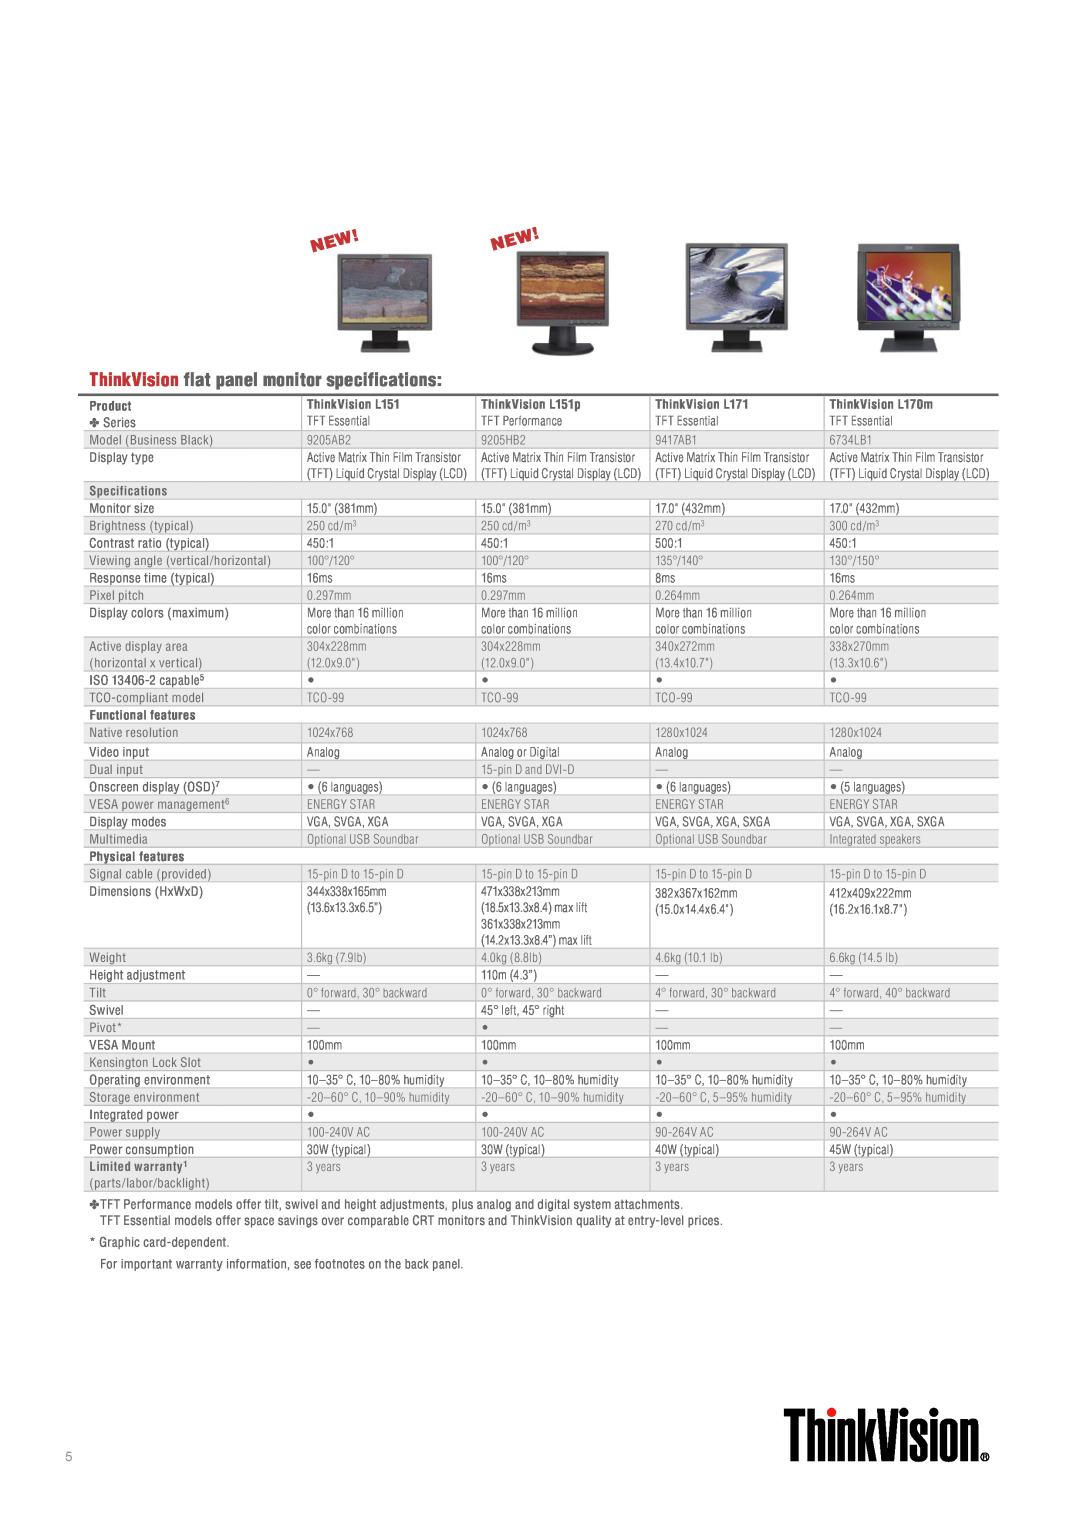 Lenovo ThinkVision flat panel monitor specifications, Product, ThinkVision L151p, ThinkVision L171, Specifications 